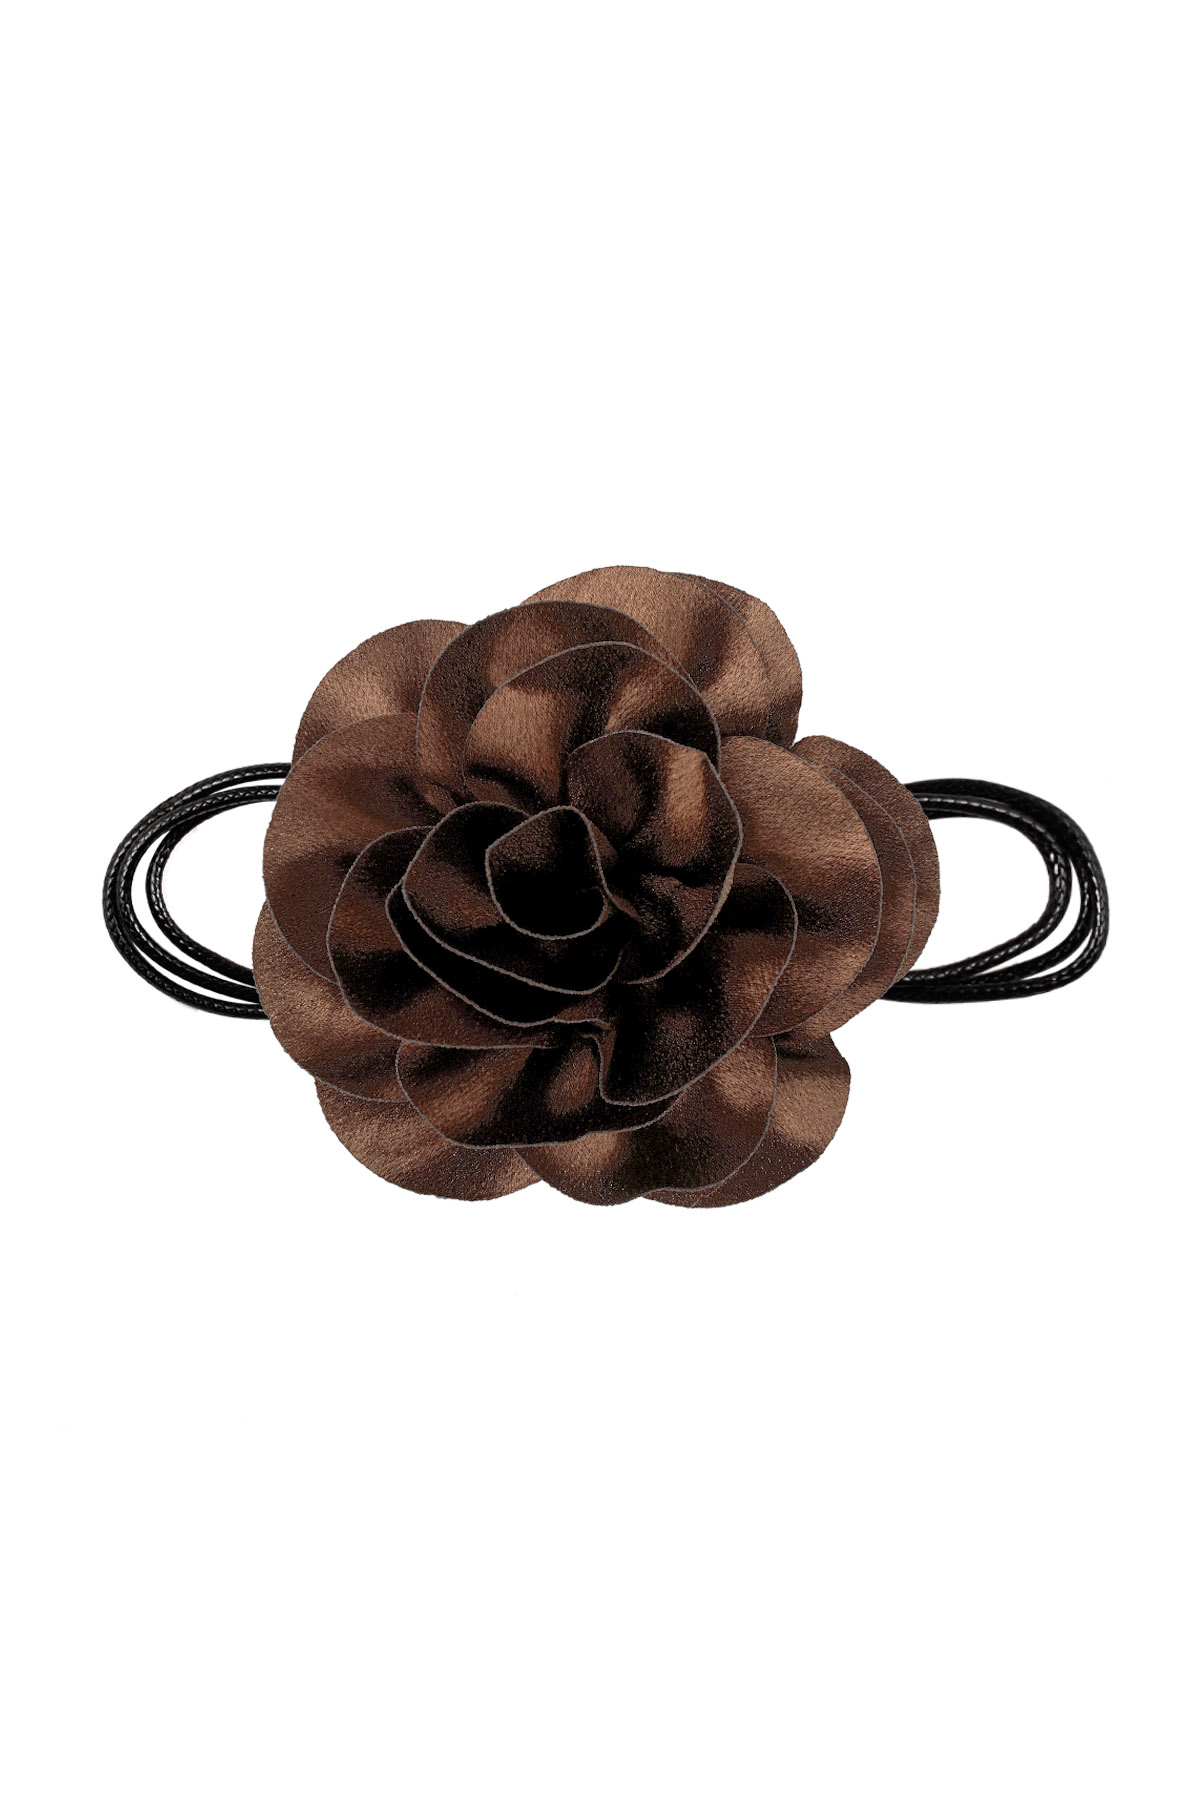 Collana corda fiore lucido - marrone h5 